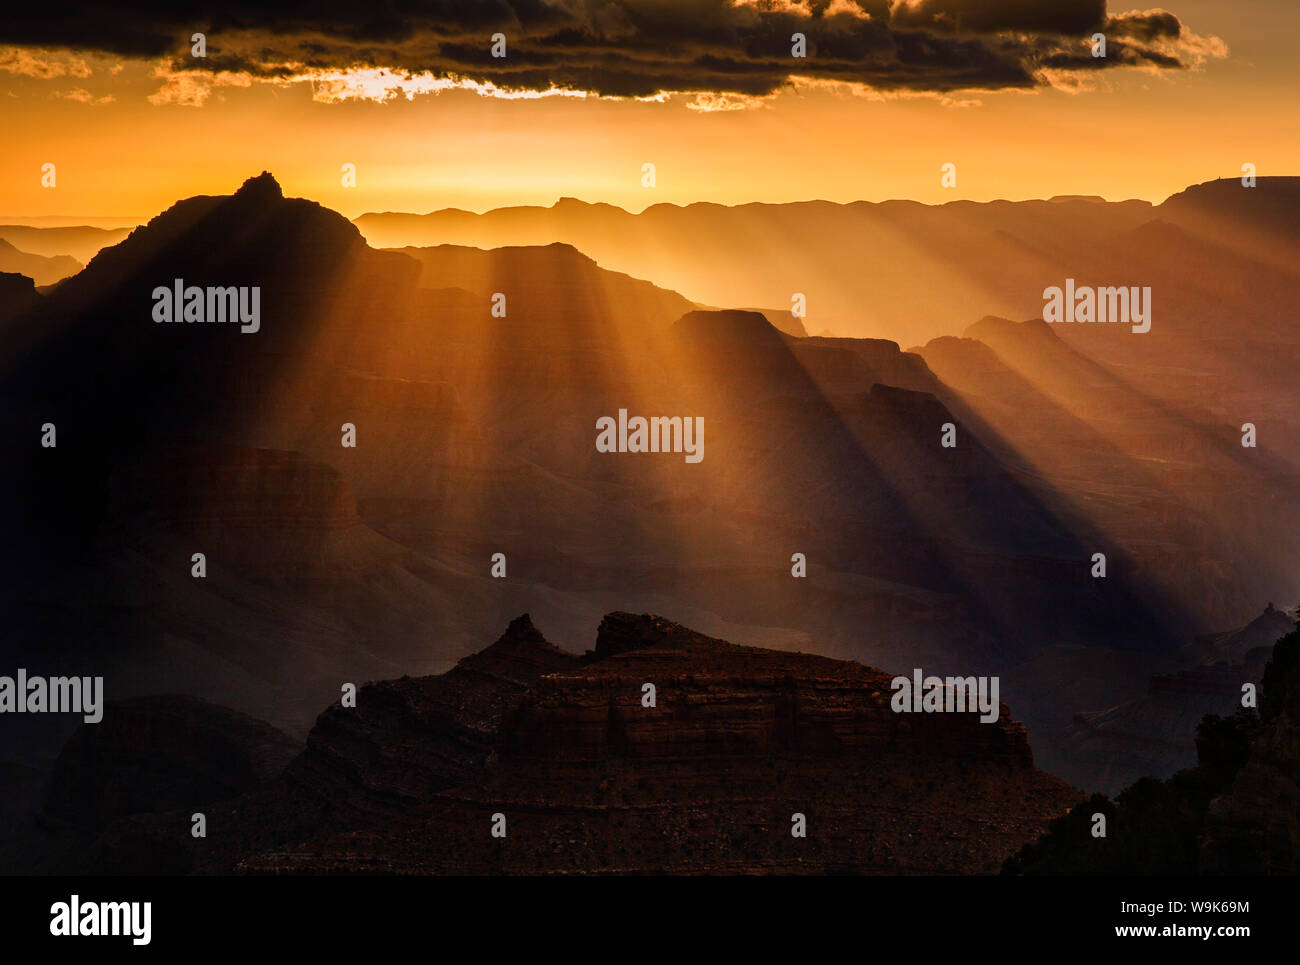 Raggi di sole si estendono da una nuvola arroccato su un orizzonte mettendo Vishnu tempio in silhouette, il Parco Nazionale del Grand Canyon, UNESCO, Arizona, Stati Uniti d'America Foto Stock